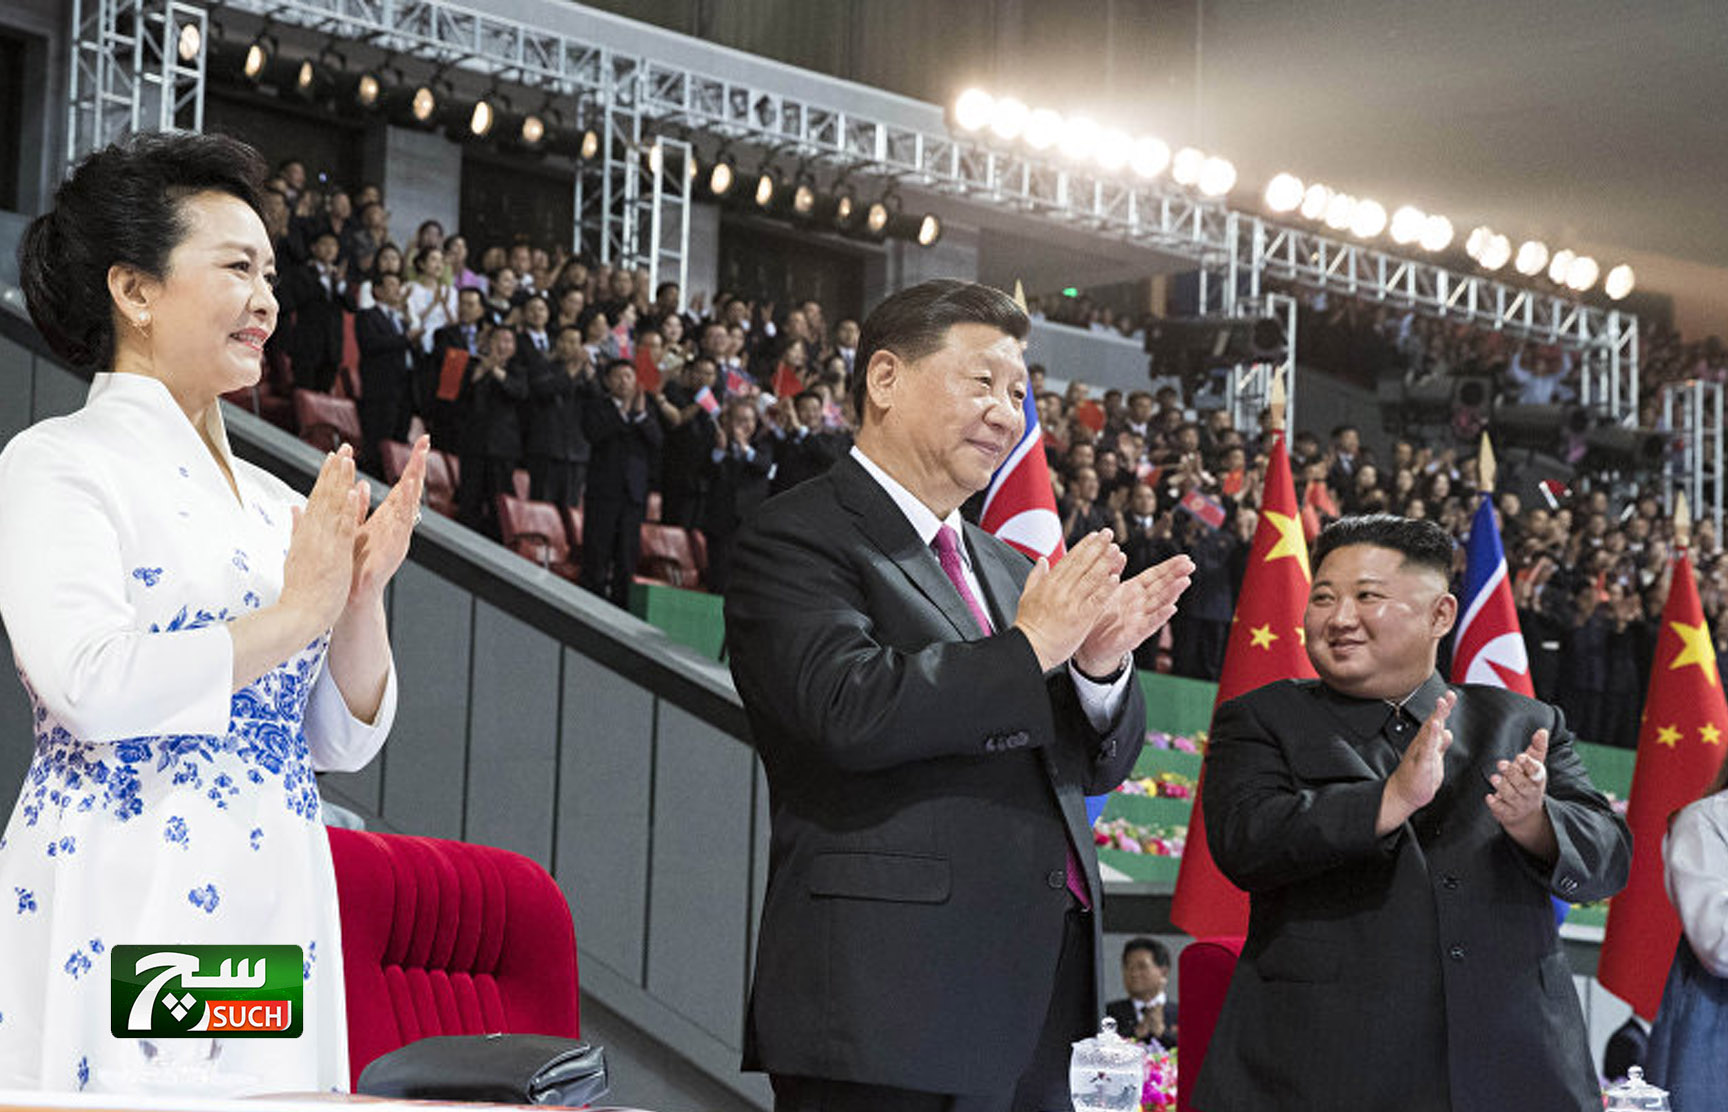 استقبال مهيب للرئيس الصيني في كوريا الشمالية رافقه مباحثات ناجحة بين الجانبين